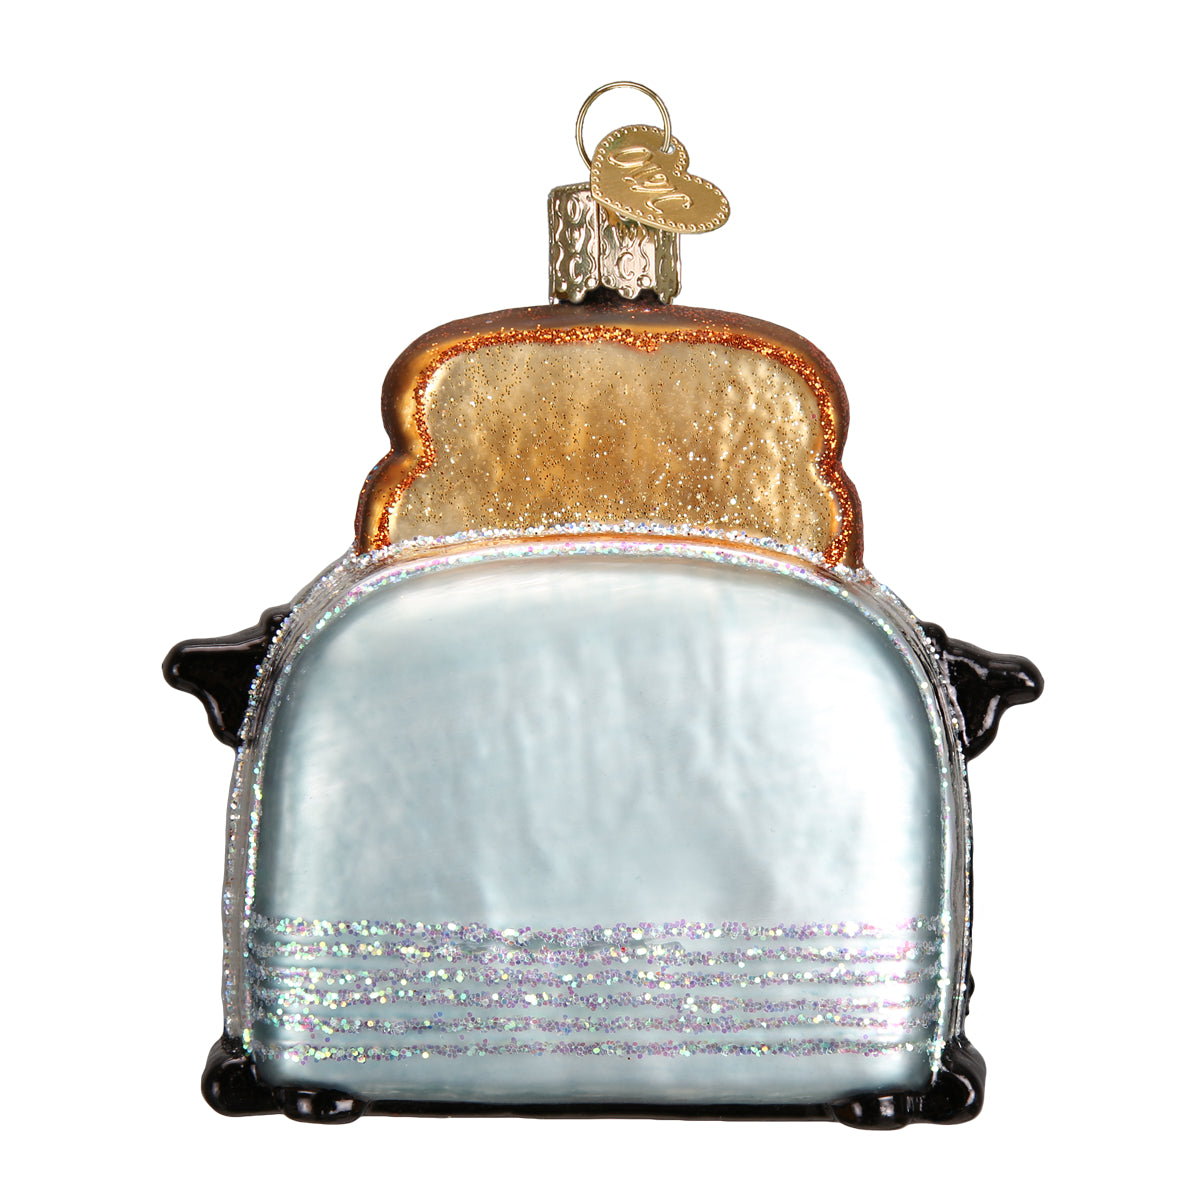 Retro Toaster Ornament